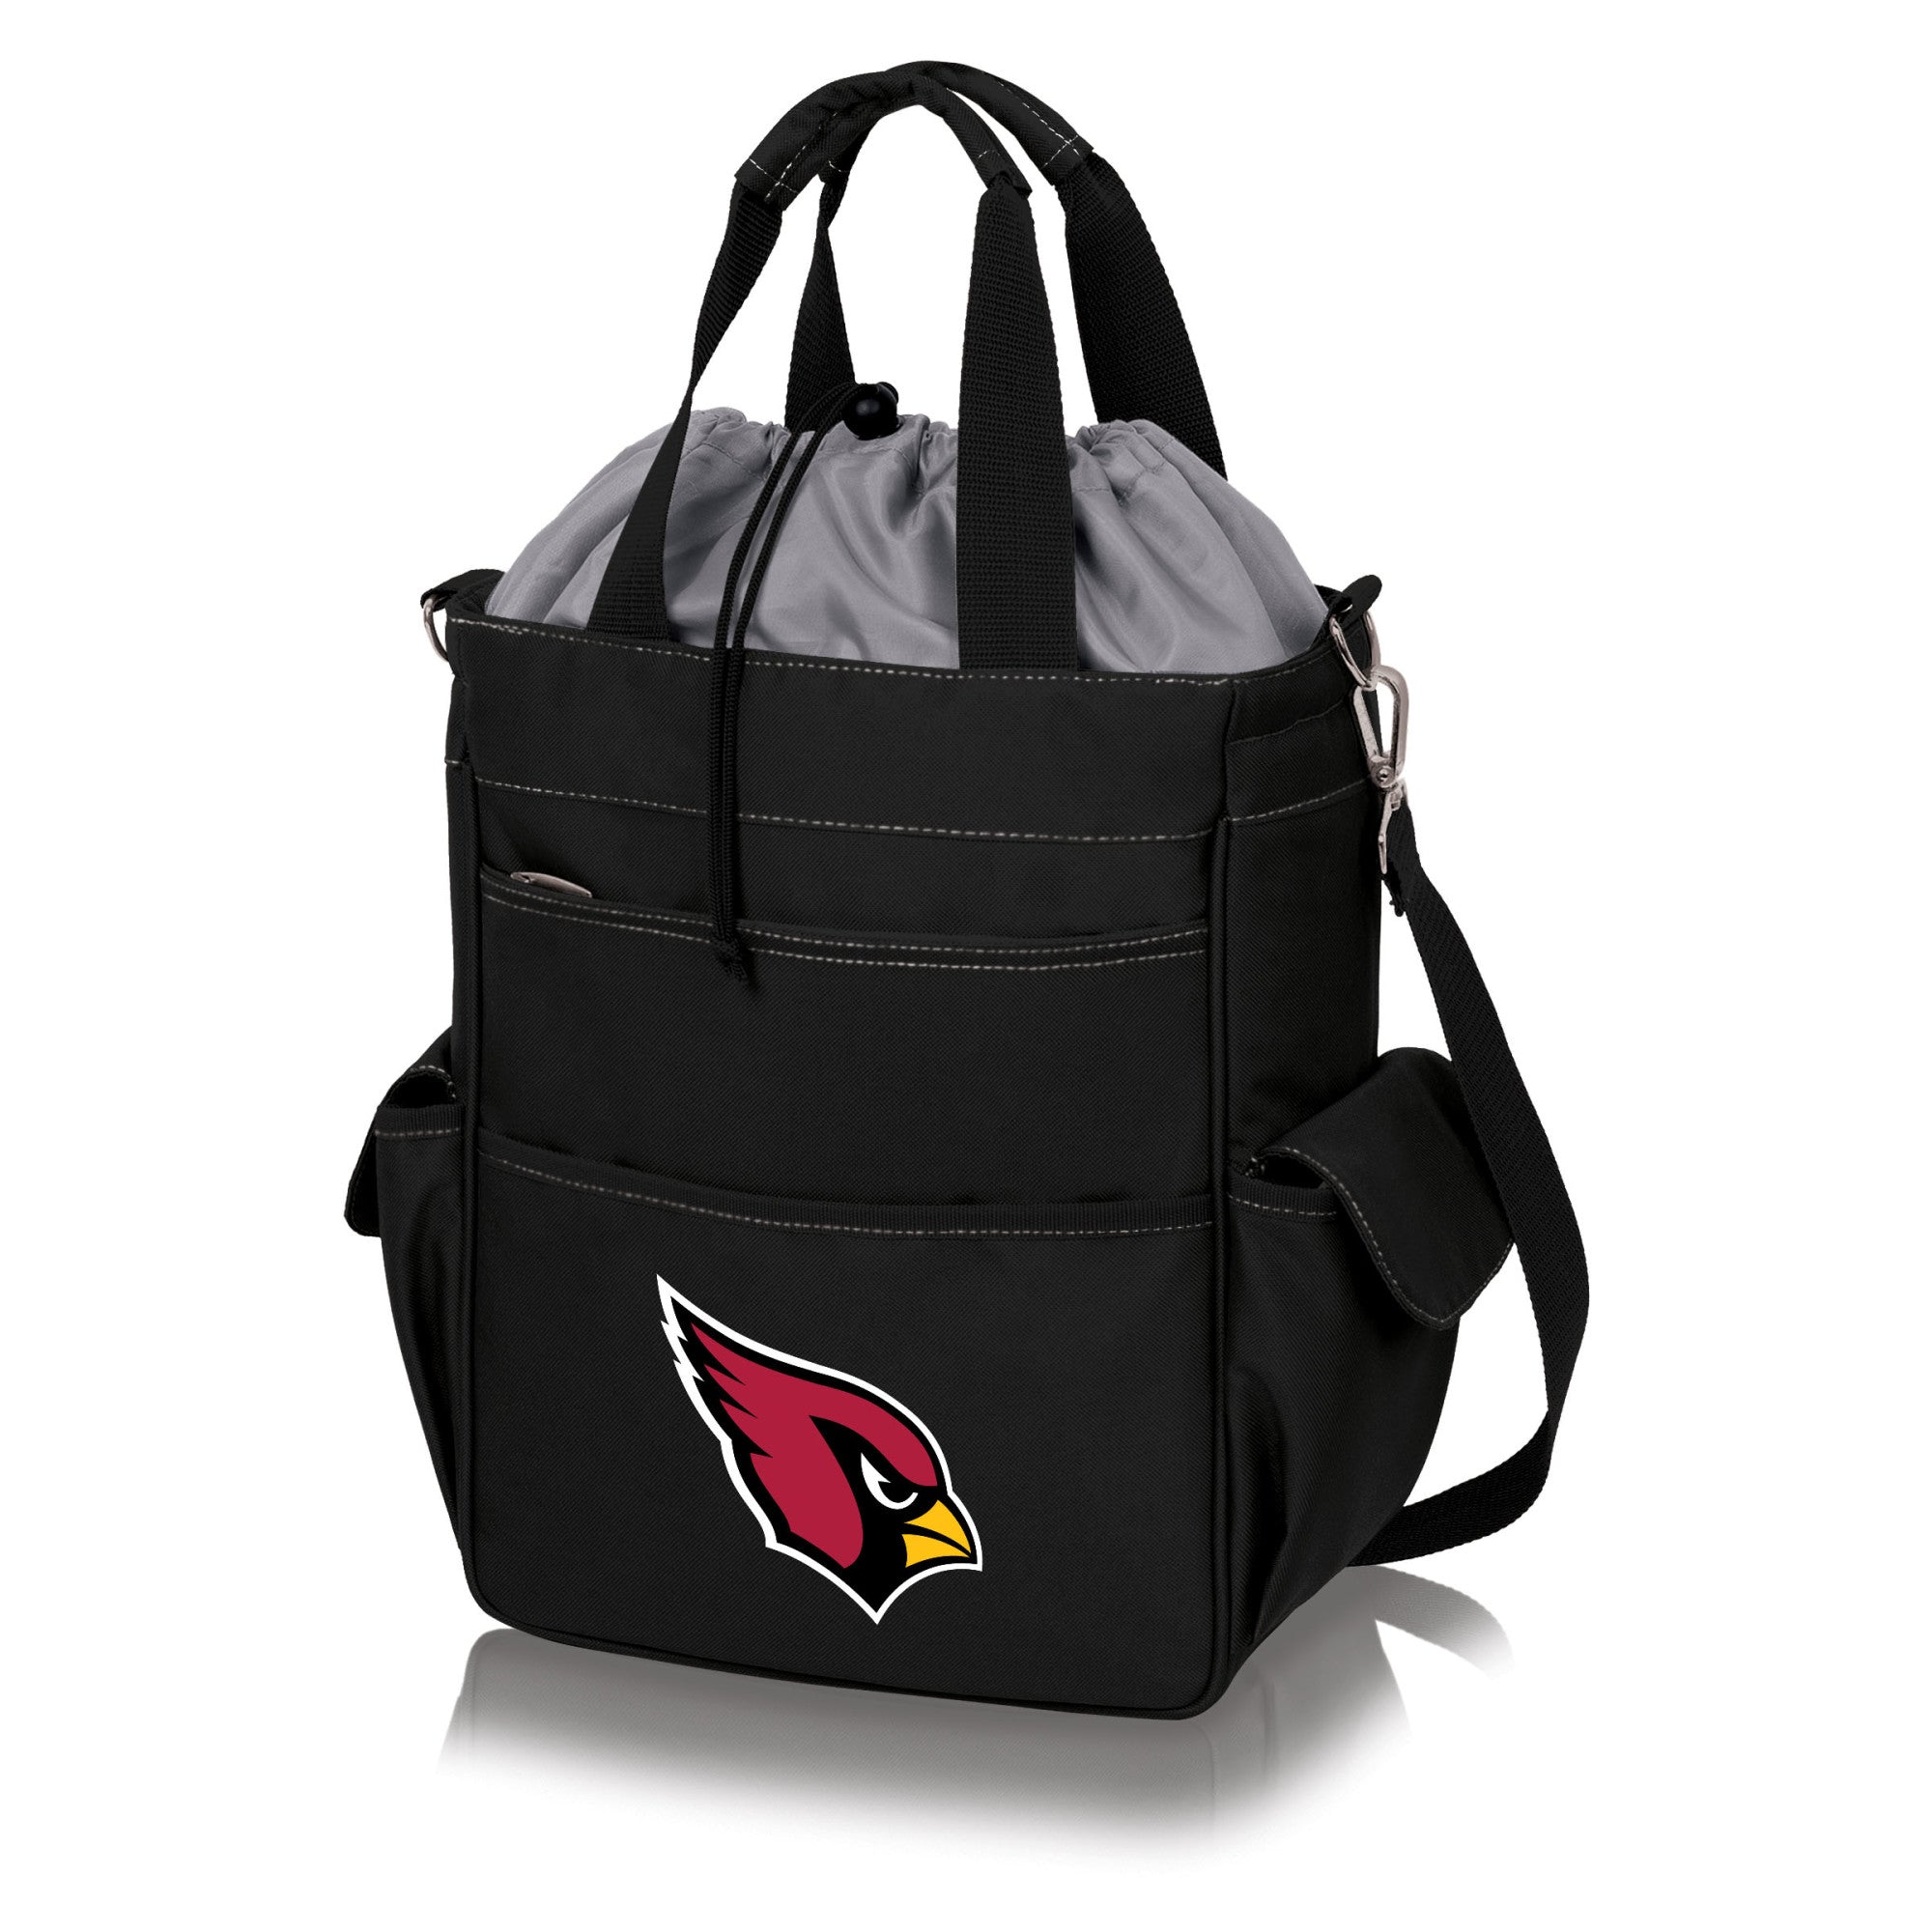 Arizona Cardinals - Activo Cooler Tote Bag